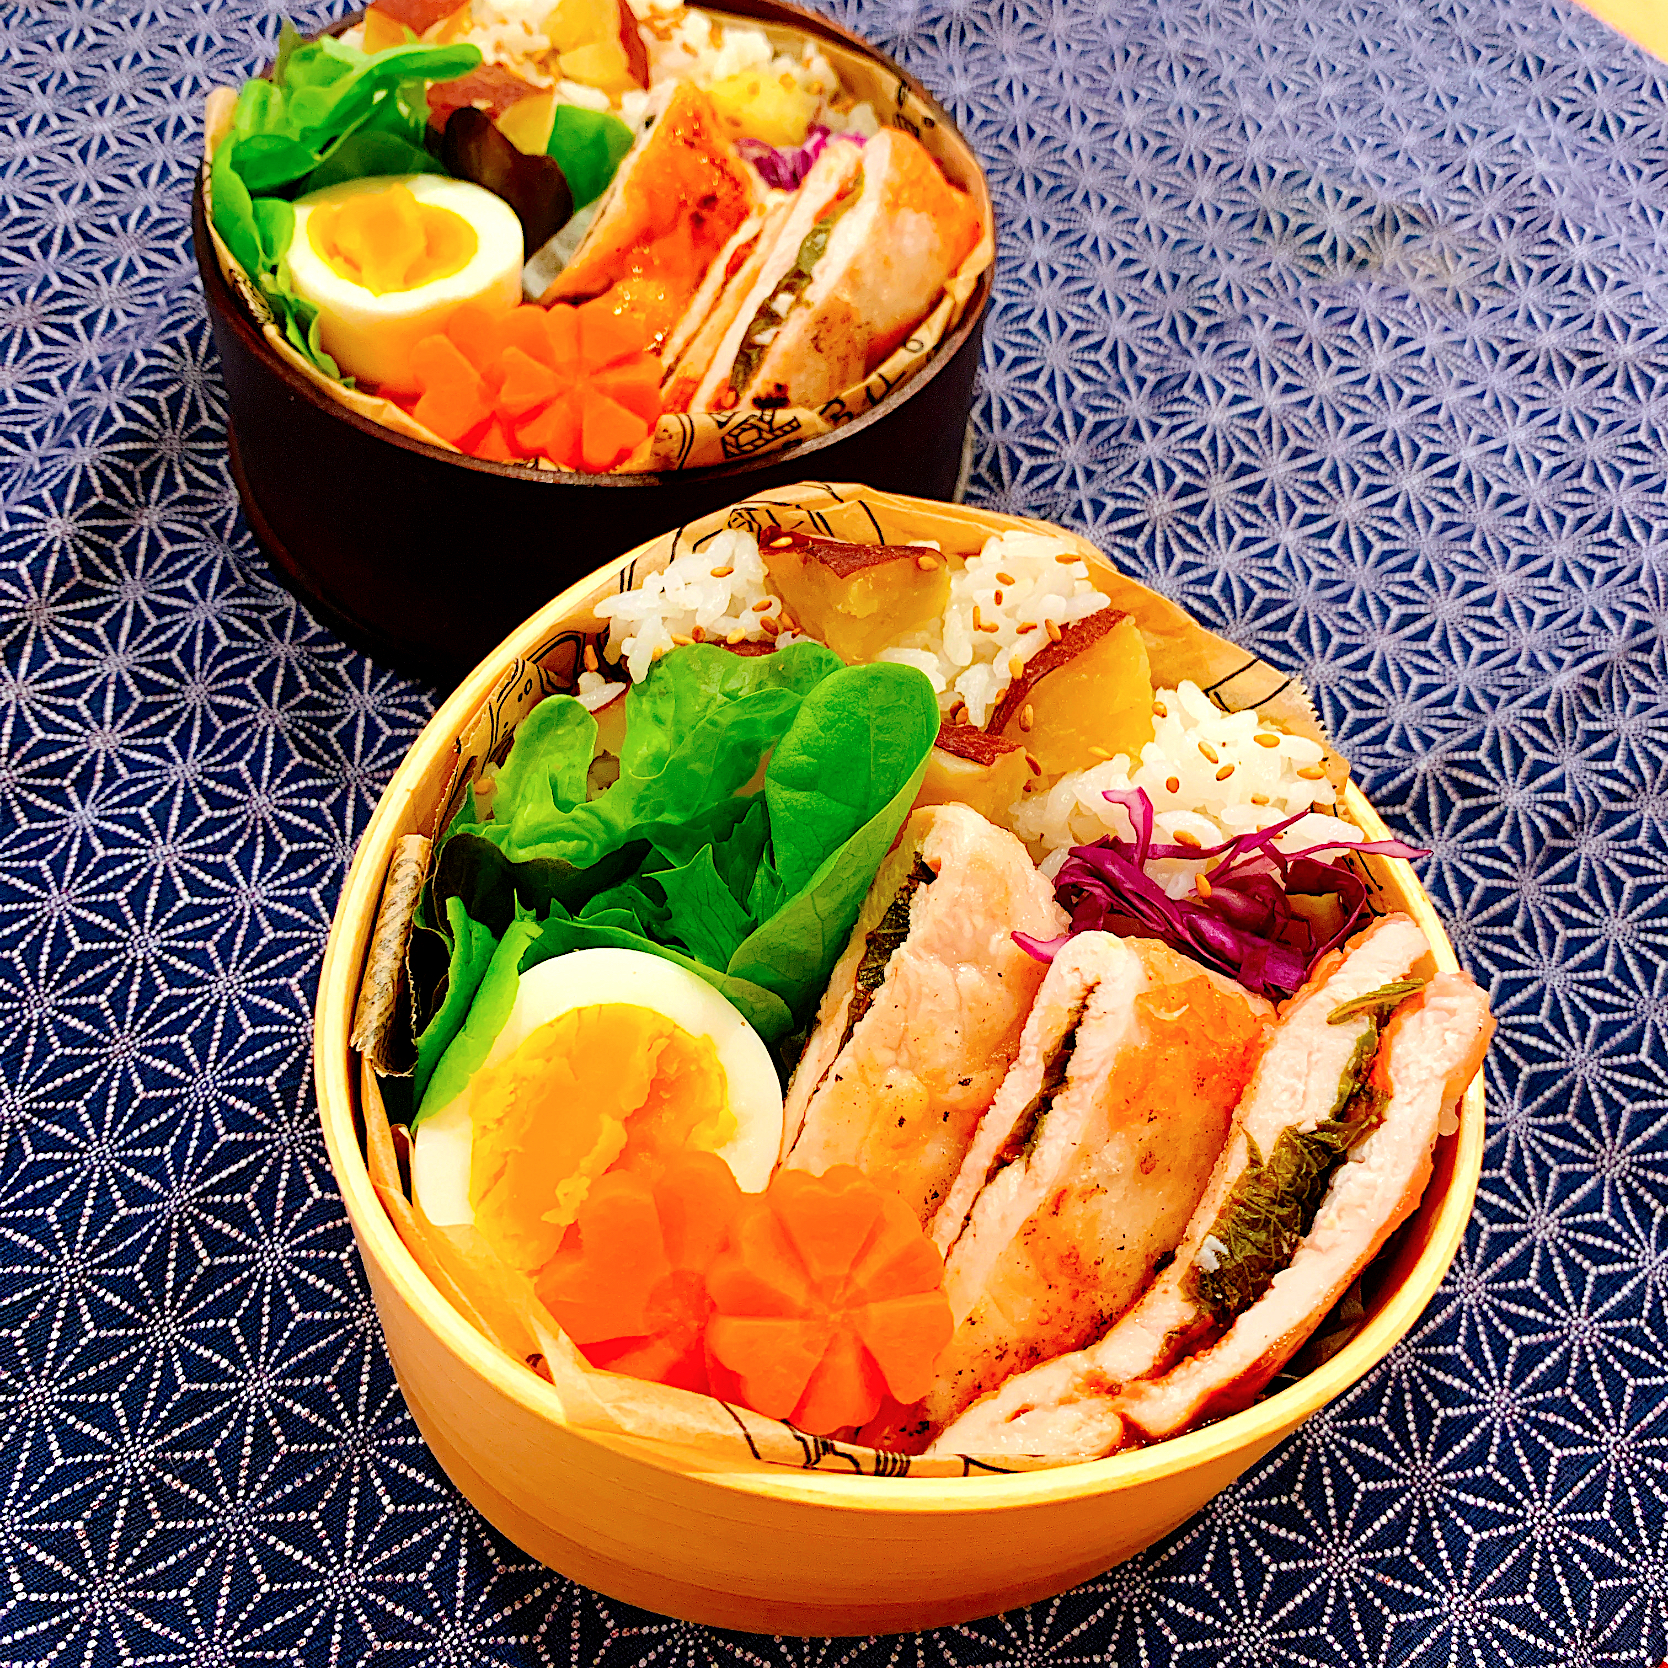 さつま芋ご飯✴︎                                                  鶏ささみ紫蘇梅サンド焼き弁当✴︎